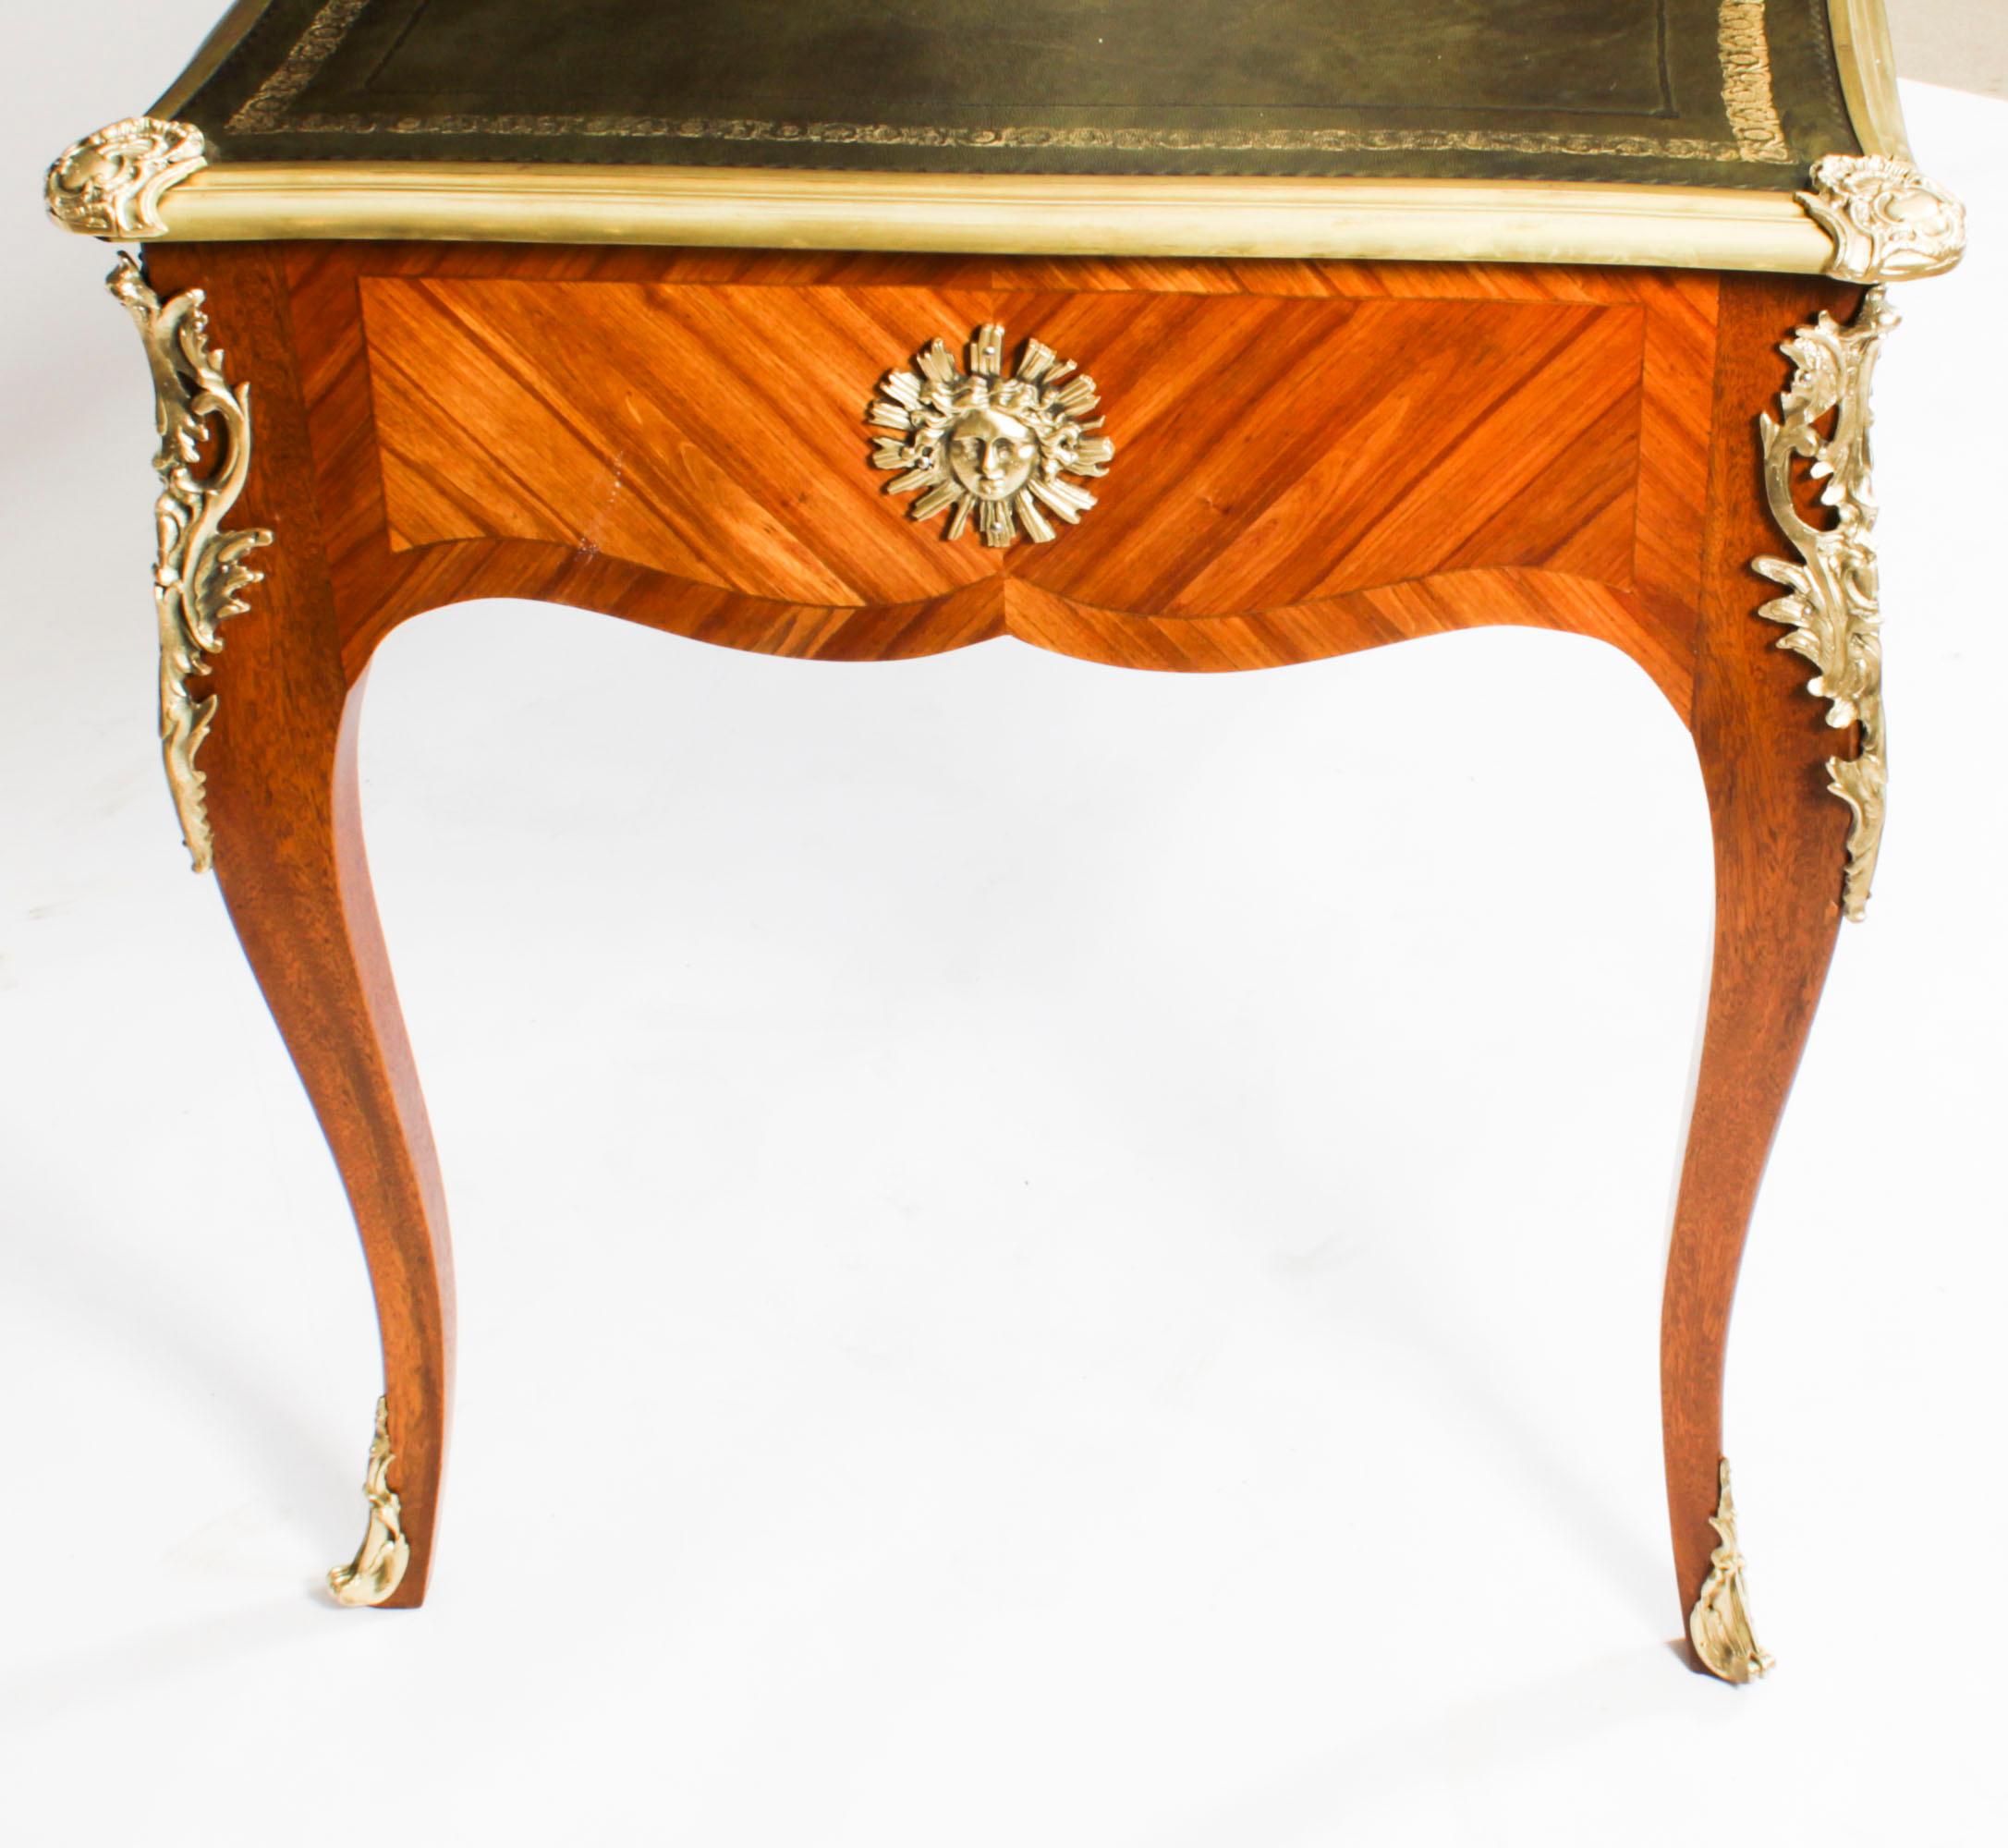 Antique Louis Revival Ormolu Bureau Plat Desk Writing Table 19th C For Sale 11